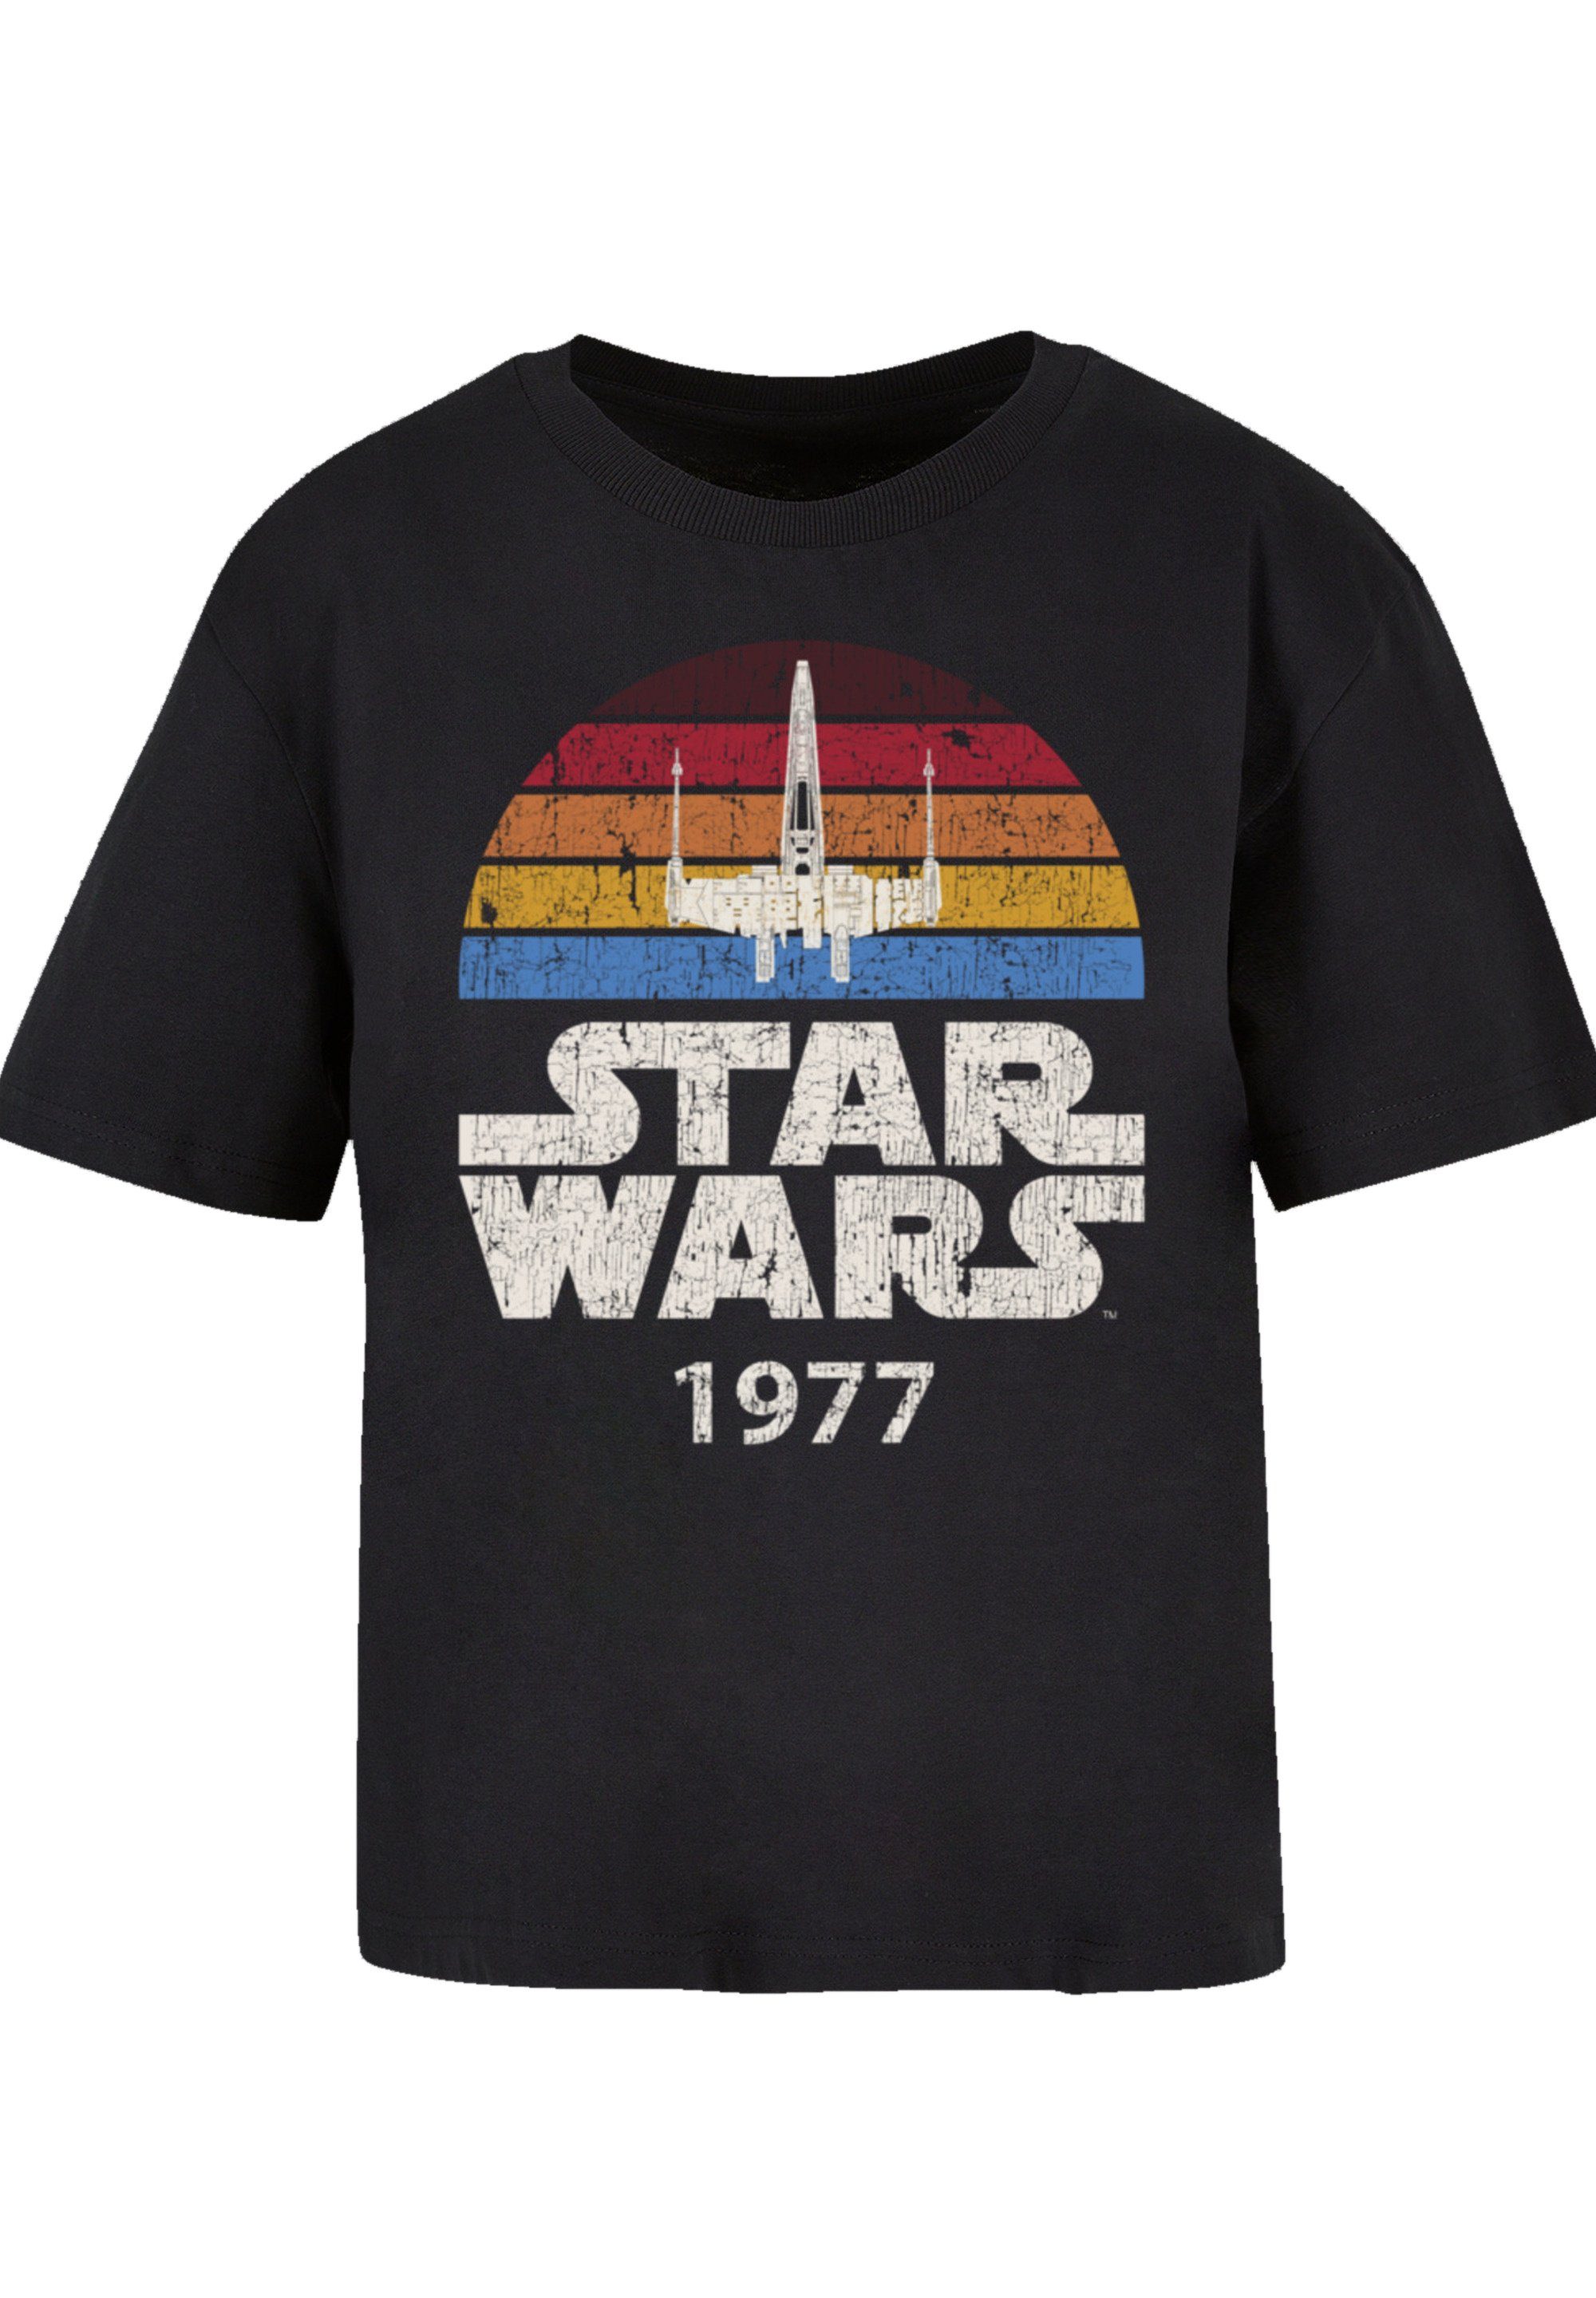 Wars Trip Qualität T-Shirt F4NT4STIC X-Wing 1977 Star Premium